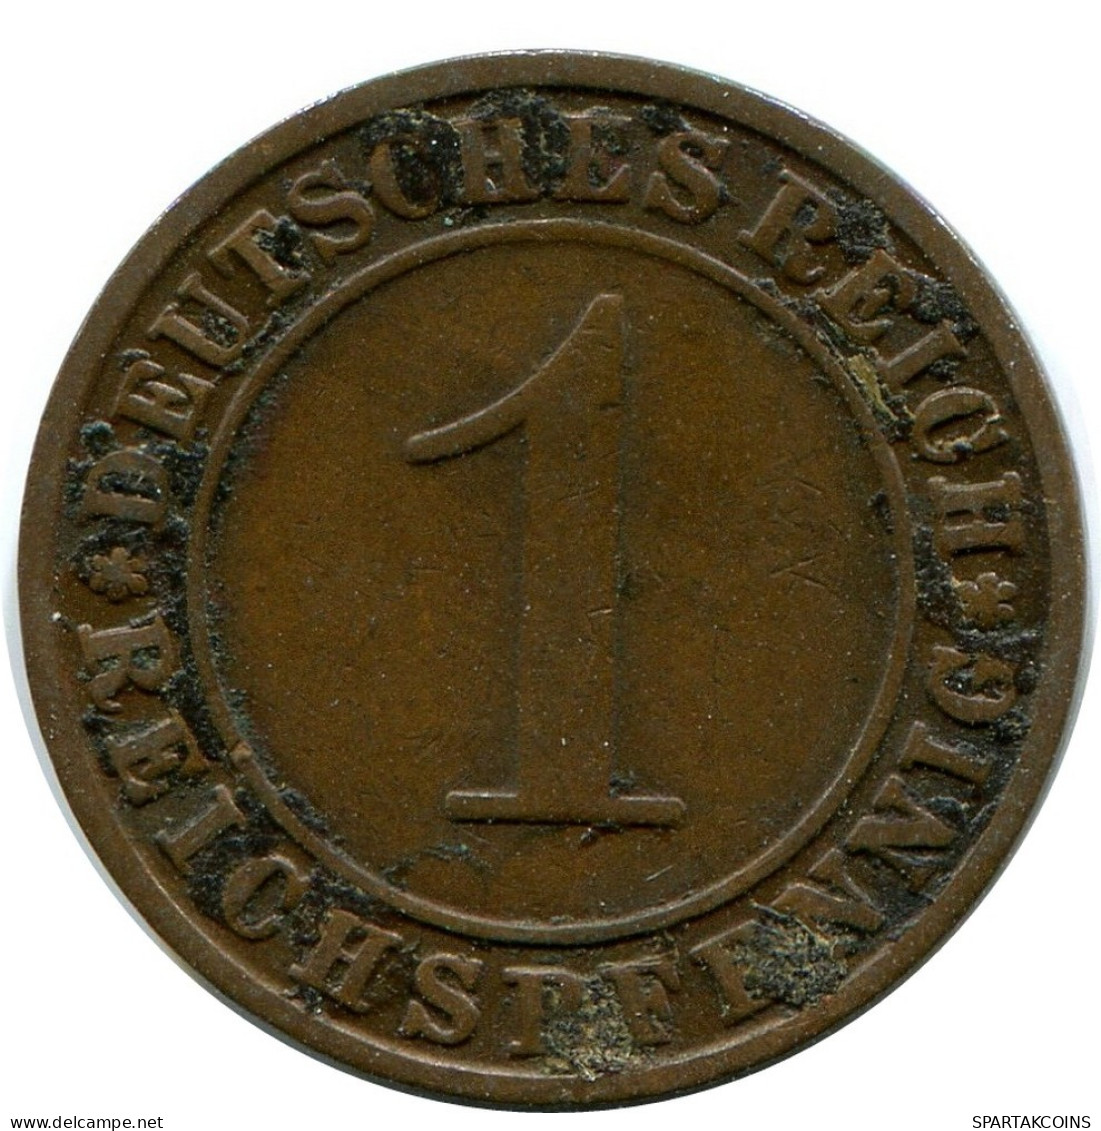 1 REICHSPFENNIG 1925 G GERMANY Coin #DB776.U.A - 1 Rentenpfennig & 1 Reichspfennig